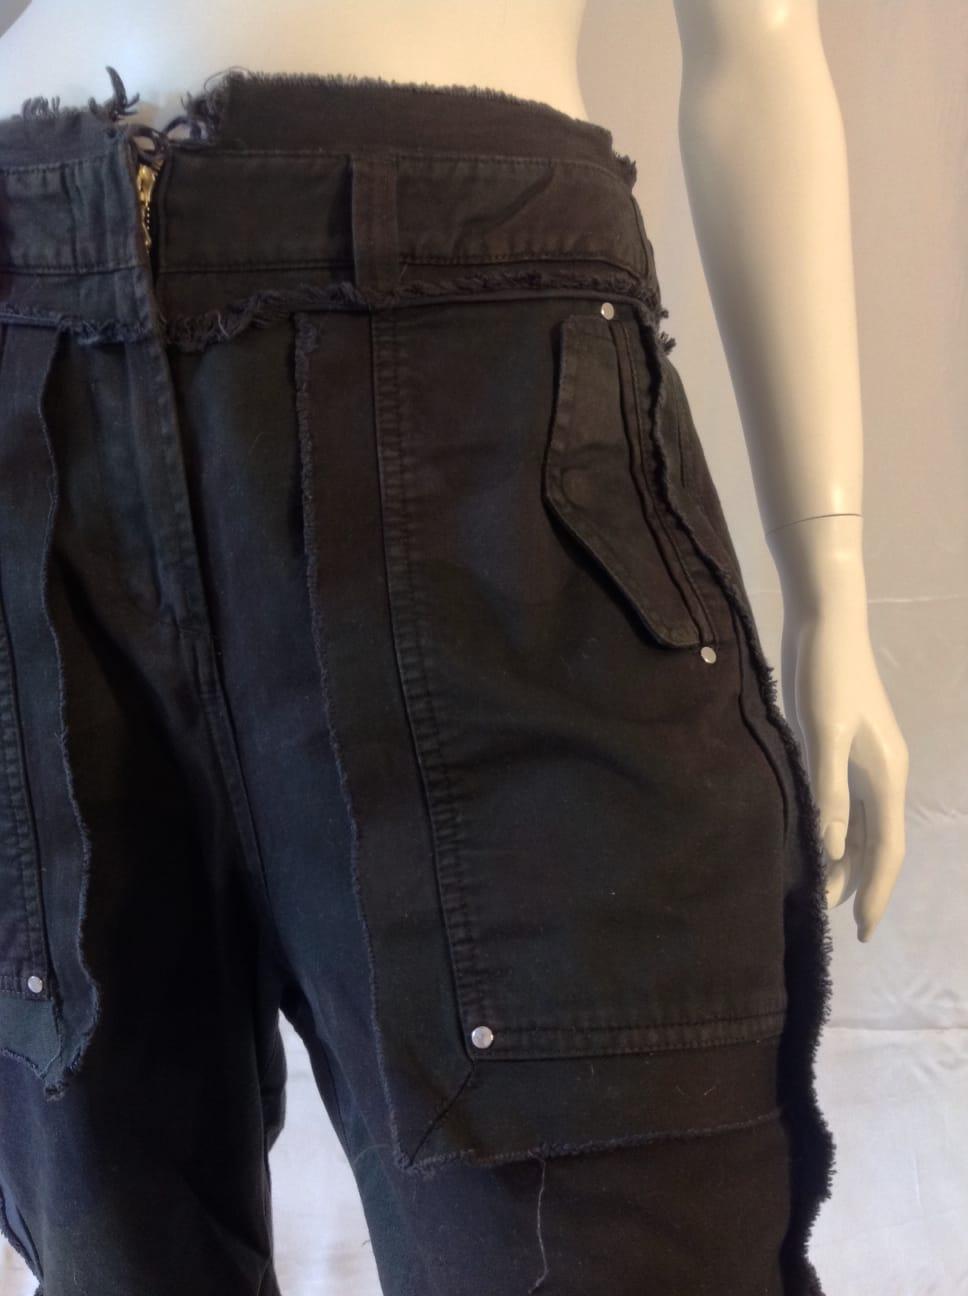 Gianfranco Ferré drop crotch black jeans, c 2010 For Sale 1